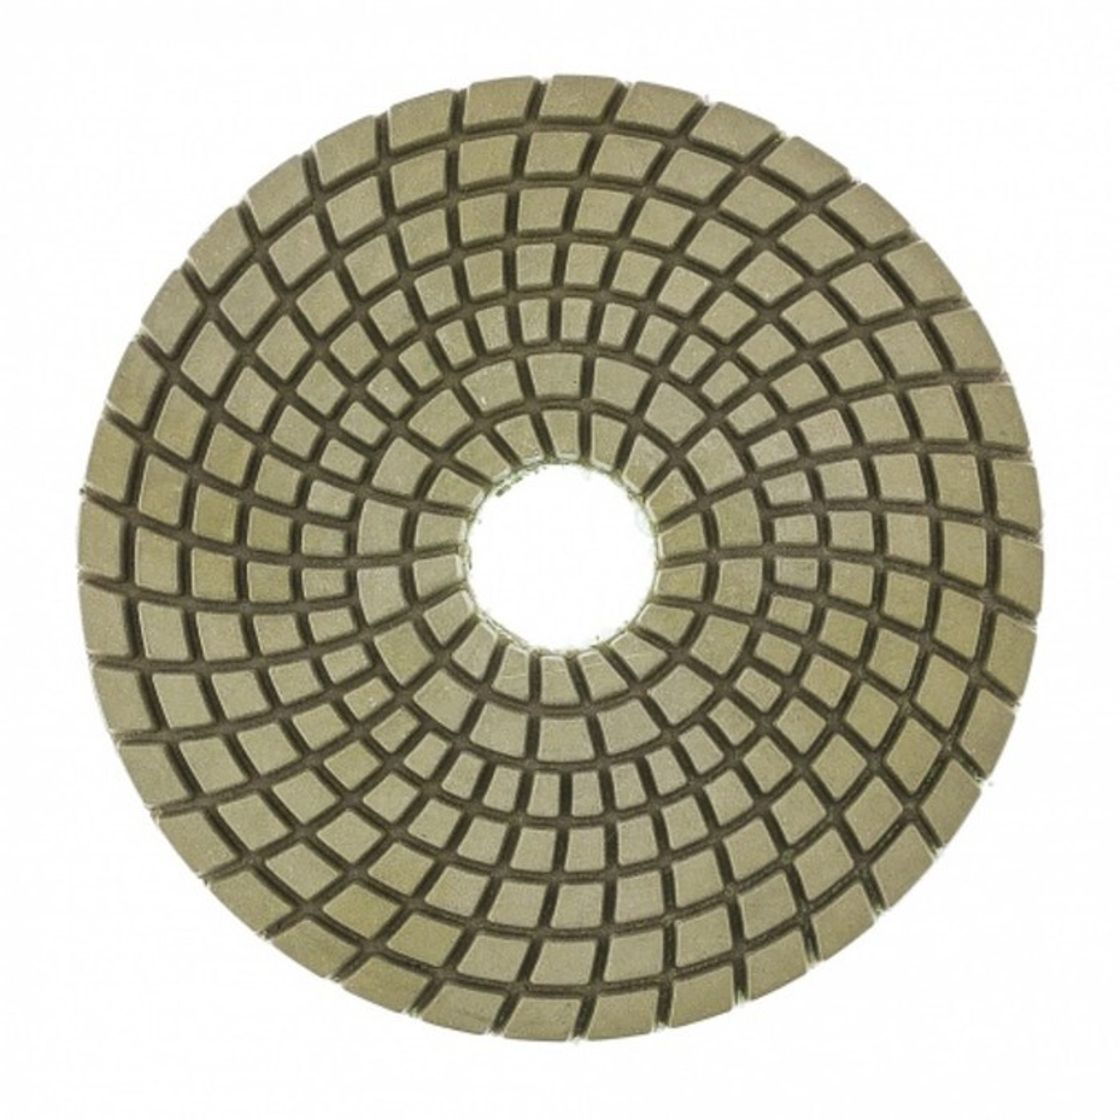 Шлифовальные круги 50 мм. Круг шлифовальный алмазный гибкий 100 мм p800 Matrix. АГШК алмазный гибкий шлифовальный круг. Круг шлифовальный алмазный гибкий 100 мм p3000 Matrix. Гибкий шлифовальный круг (АГШК) 200.